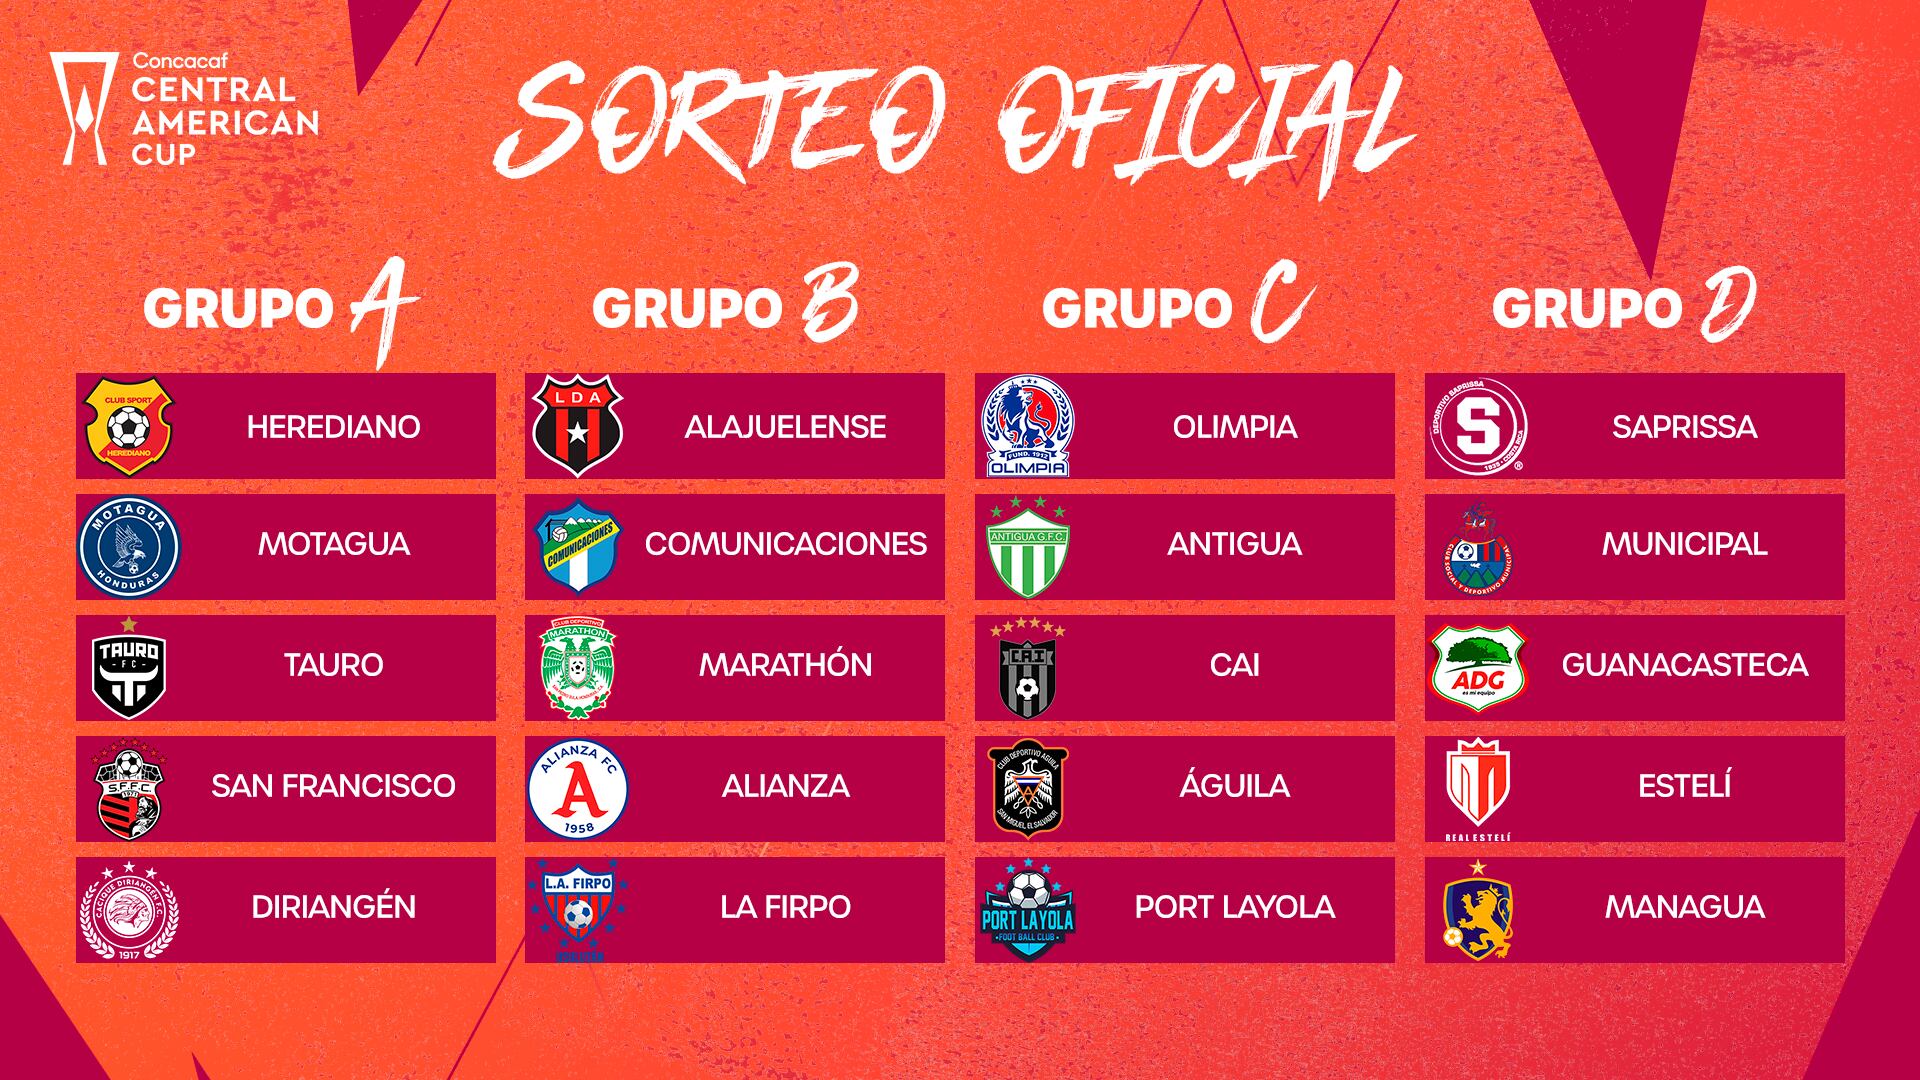 Herediano, Alajuelense, Saprissa y Guanacasteca clasificaron a la Copa Centroamericana de Concacaf y ya conocieron a sus rivales en la fase de grupos.